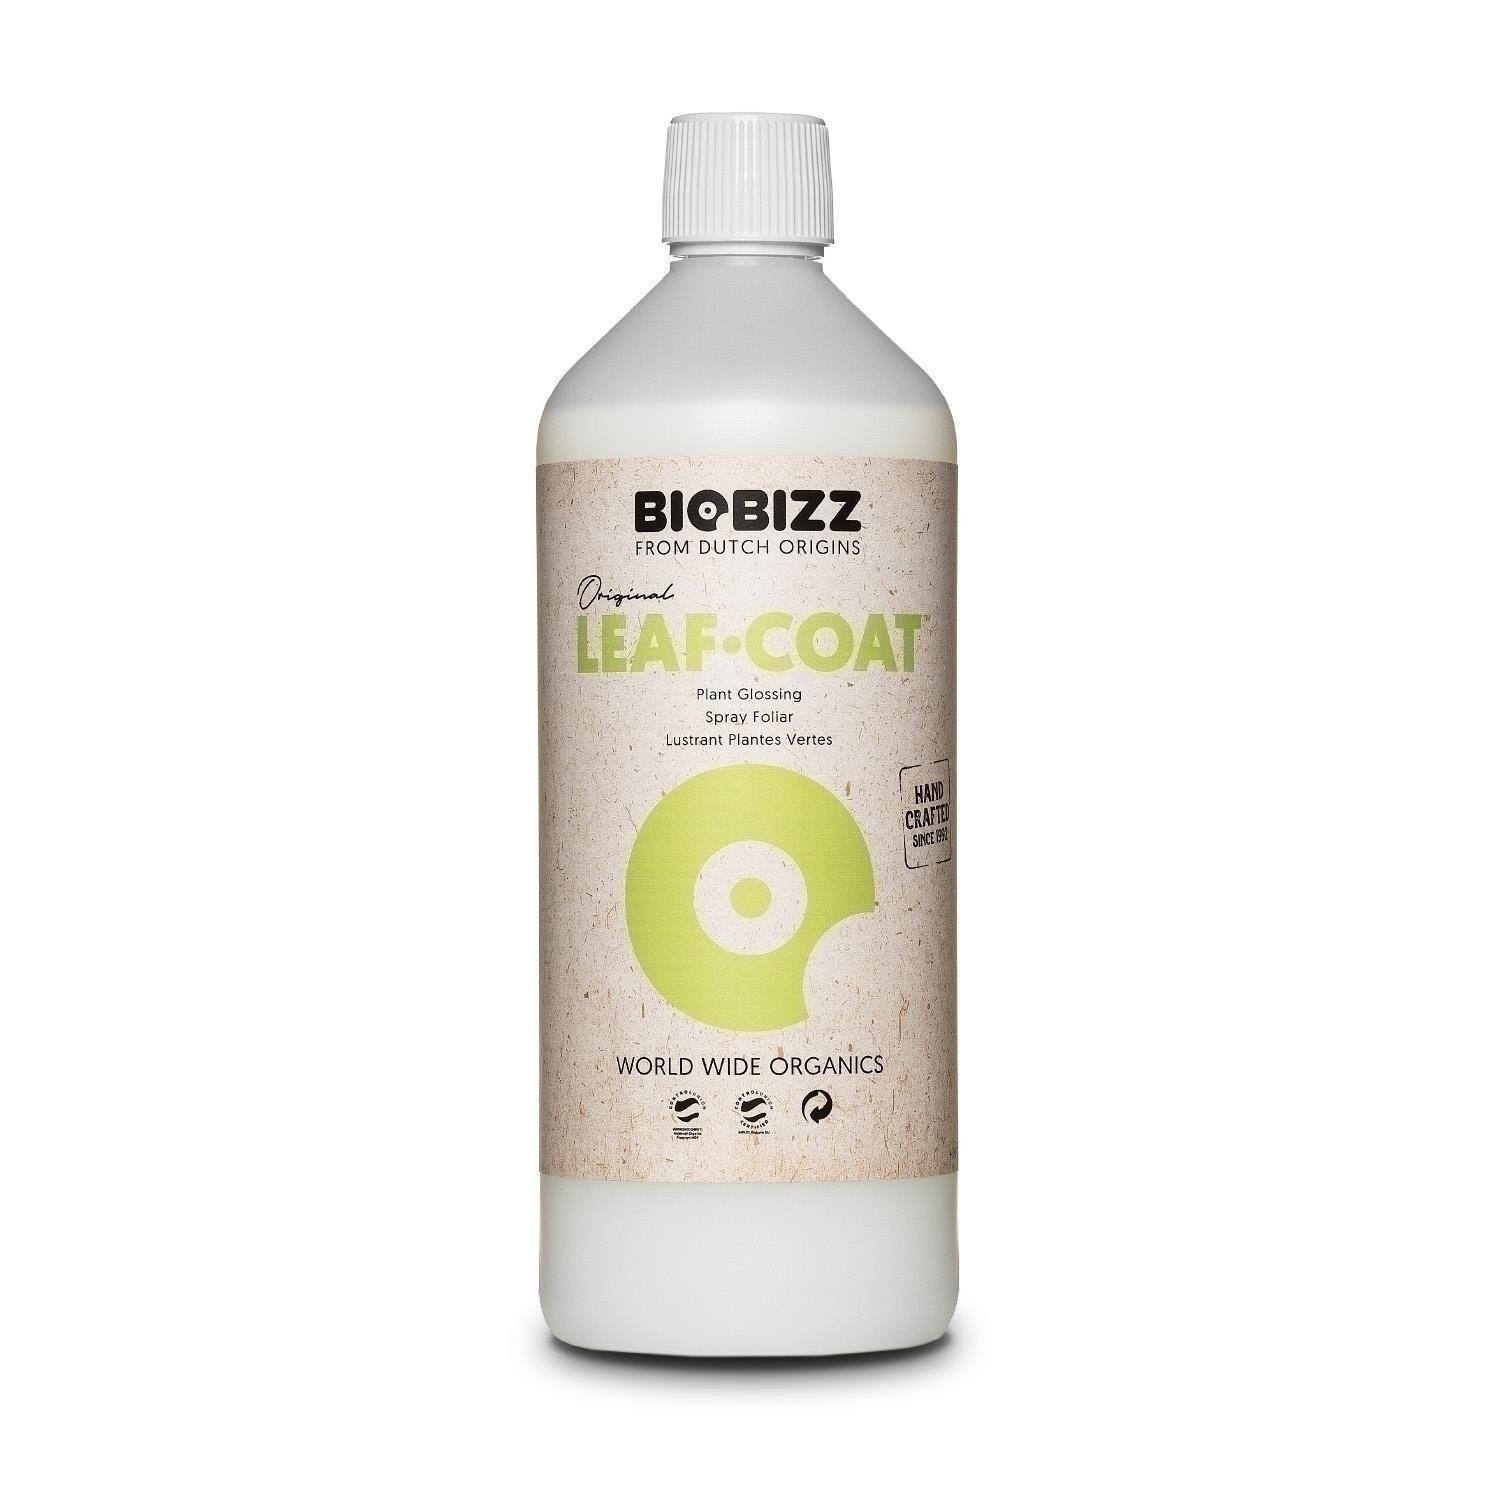 BioBizz Leaf-Coat 1L